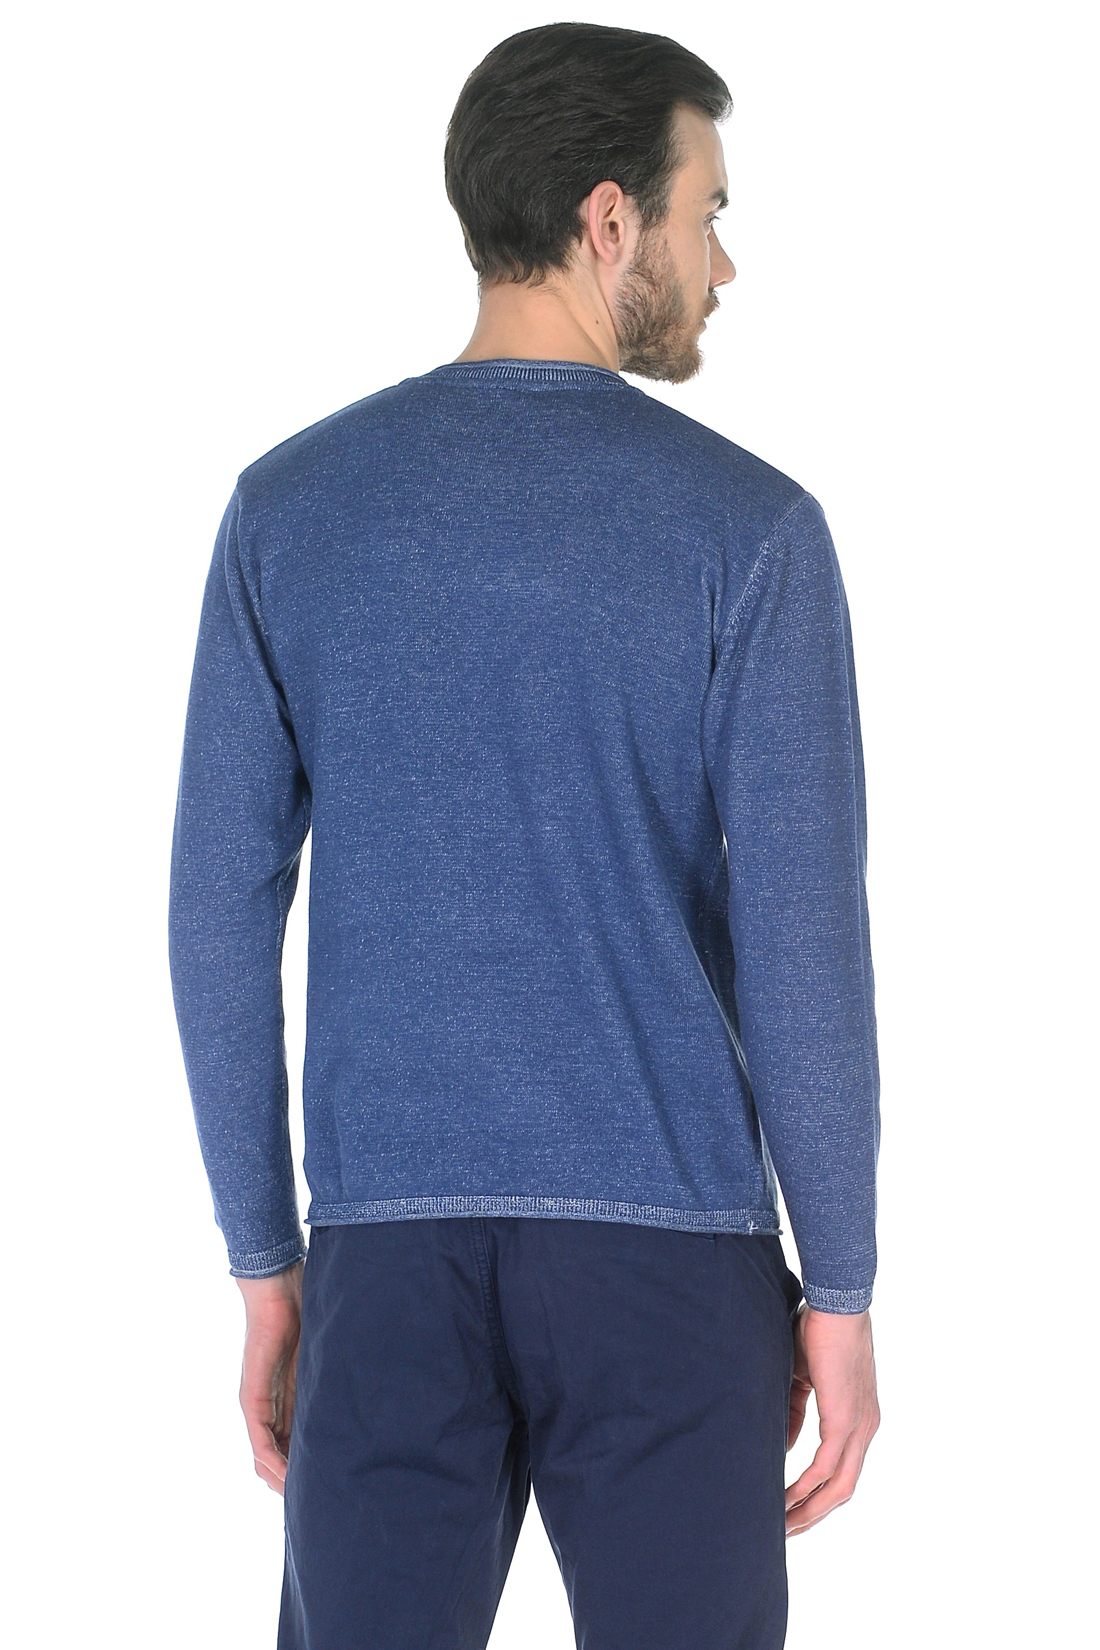 Джемпер с карманом (арт. baon B638020), размер L, цвет синий Джемпер с карманом (арт. baon B638020) - фото 2